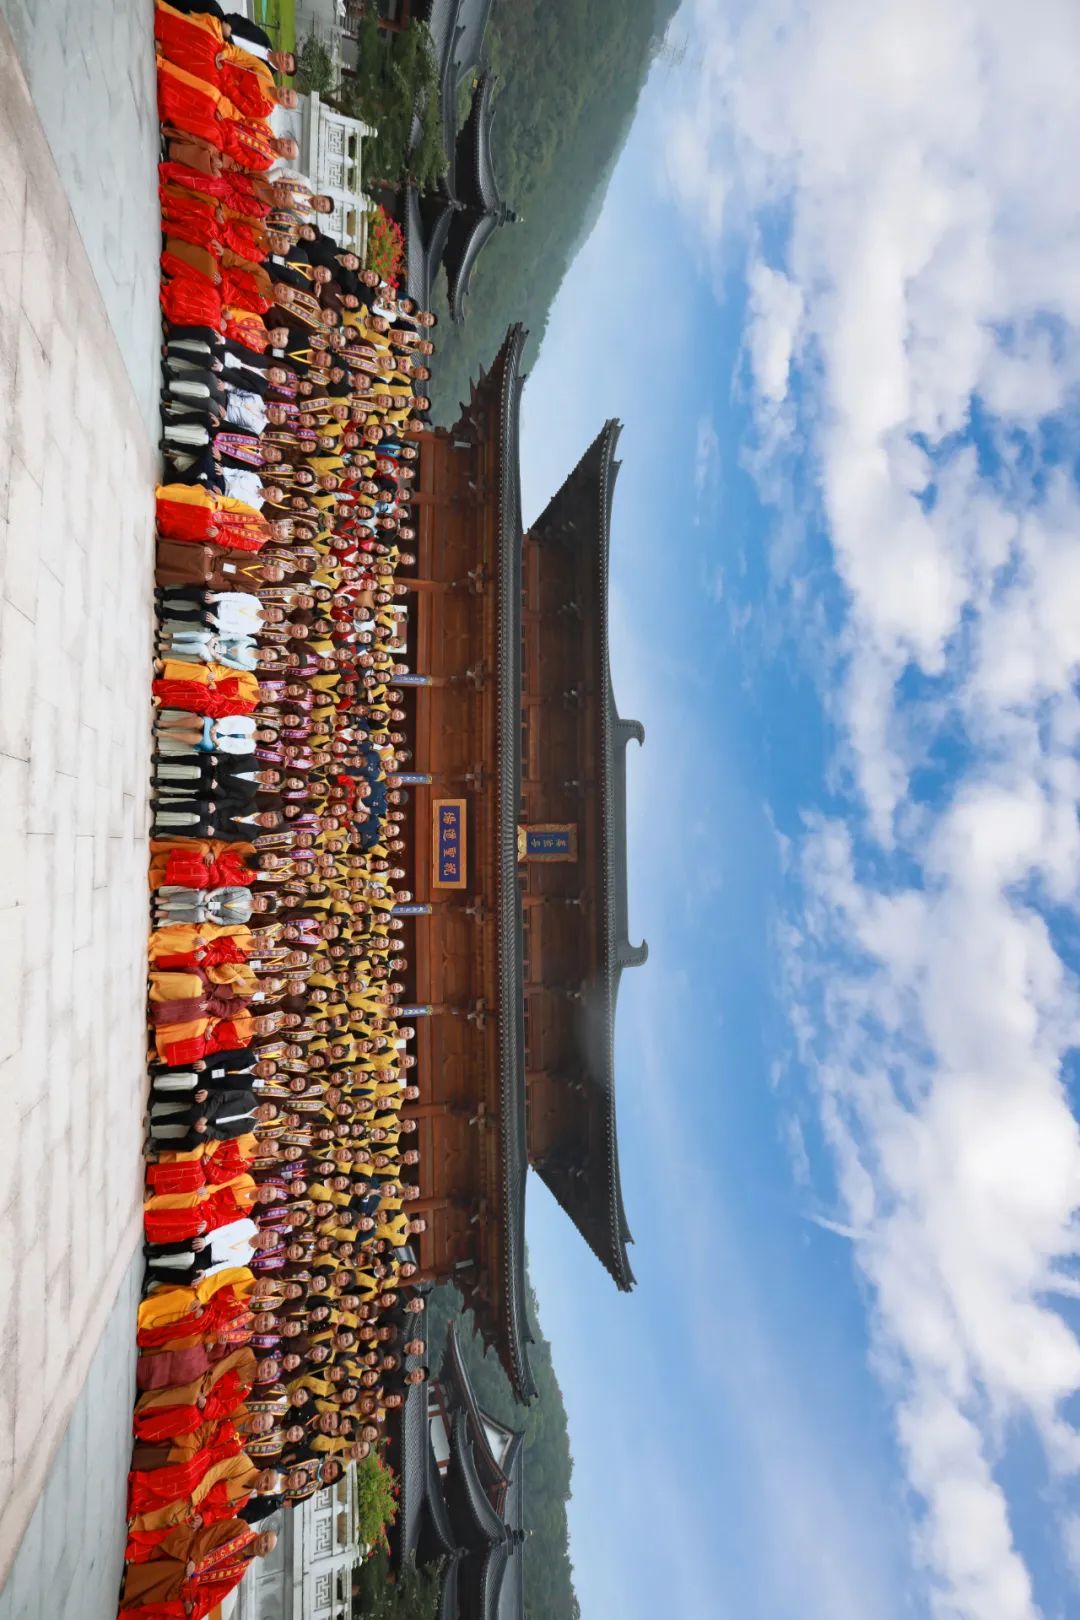 第二届国际黄檗禅论坛在福清举行